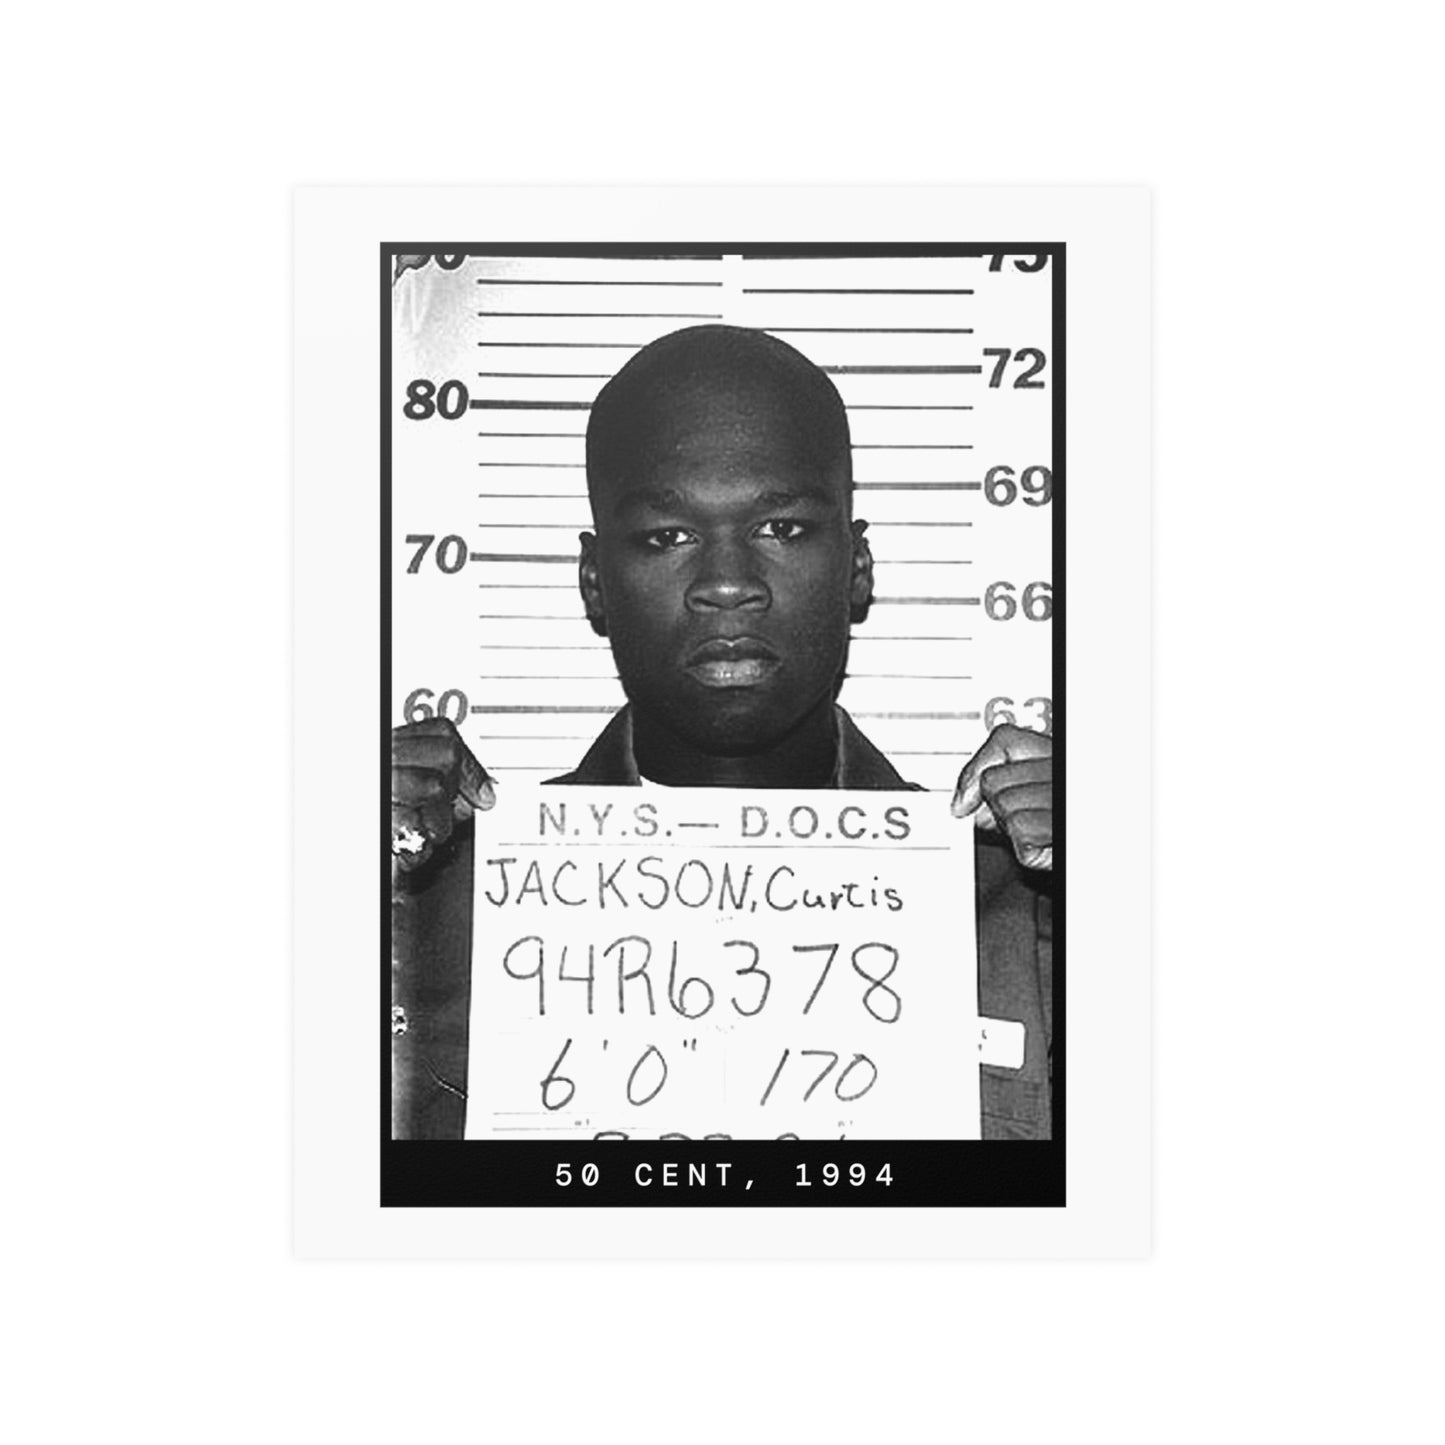 50 Cent, 1994 Rapper Mugshot Poster